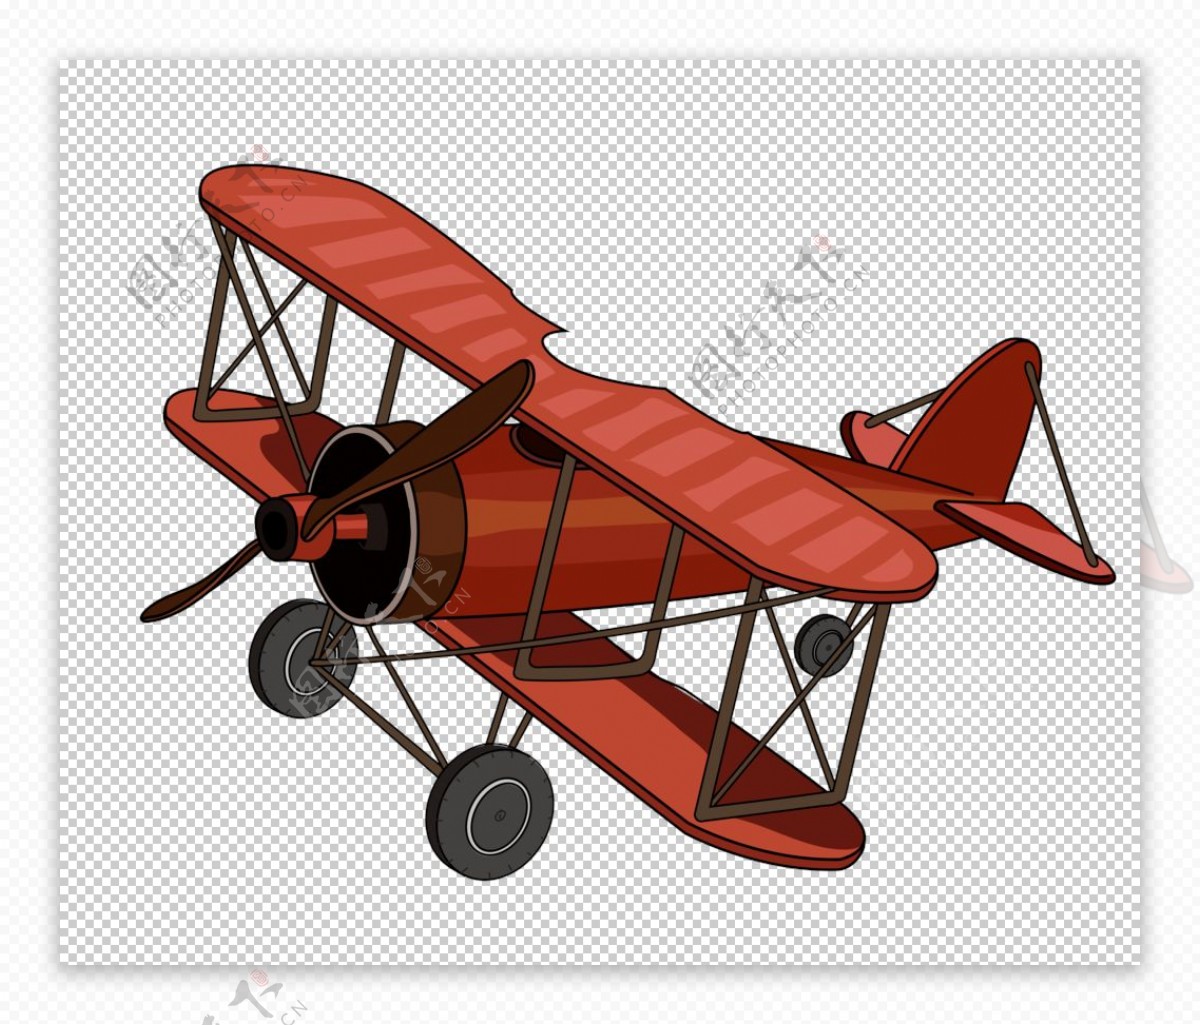 飞机红色复古立体模型海报素材